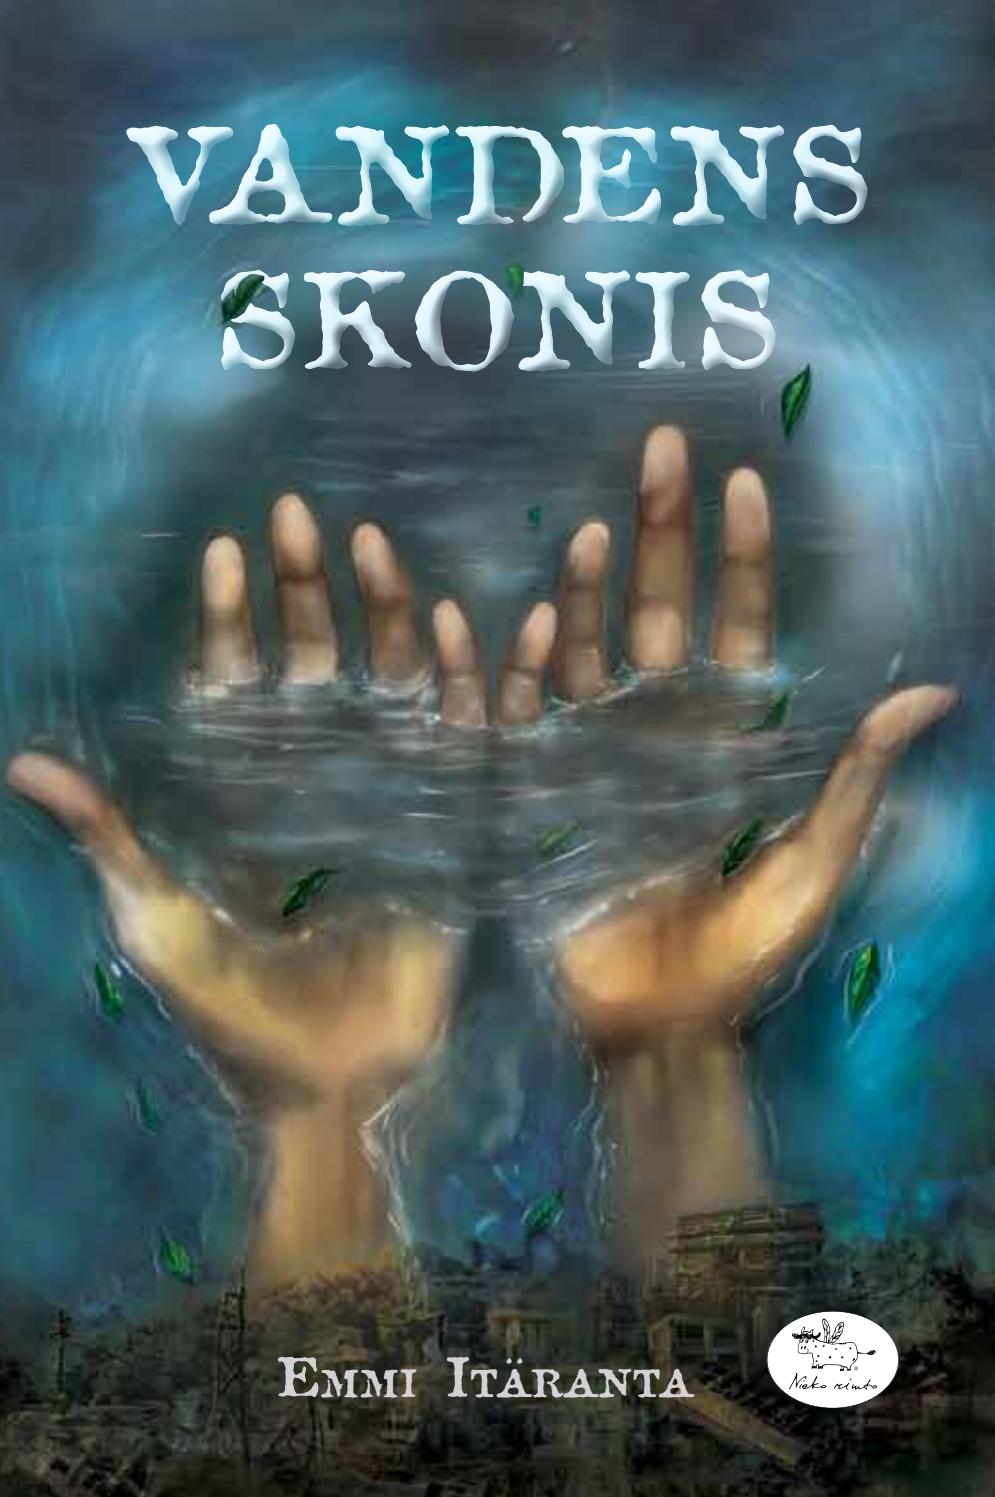 Vandens skonis book cover